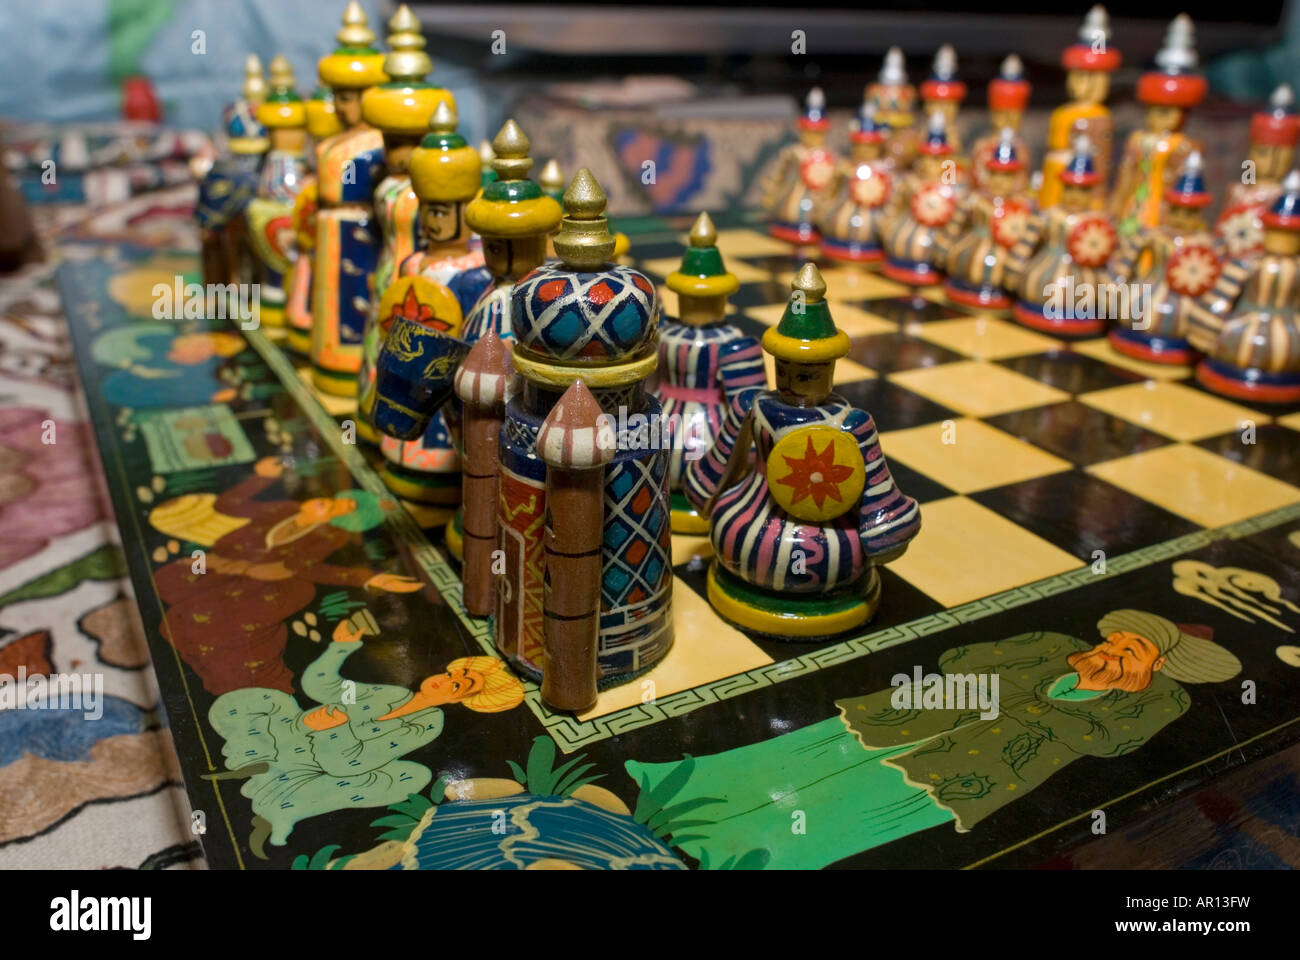 Uzbekistan's chess triumph sparks frenzy